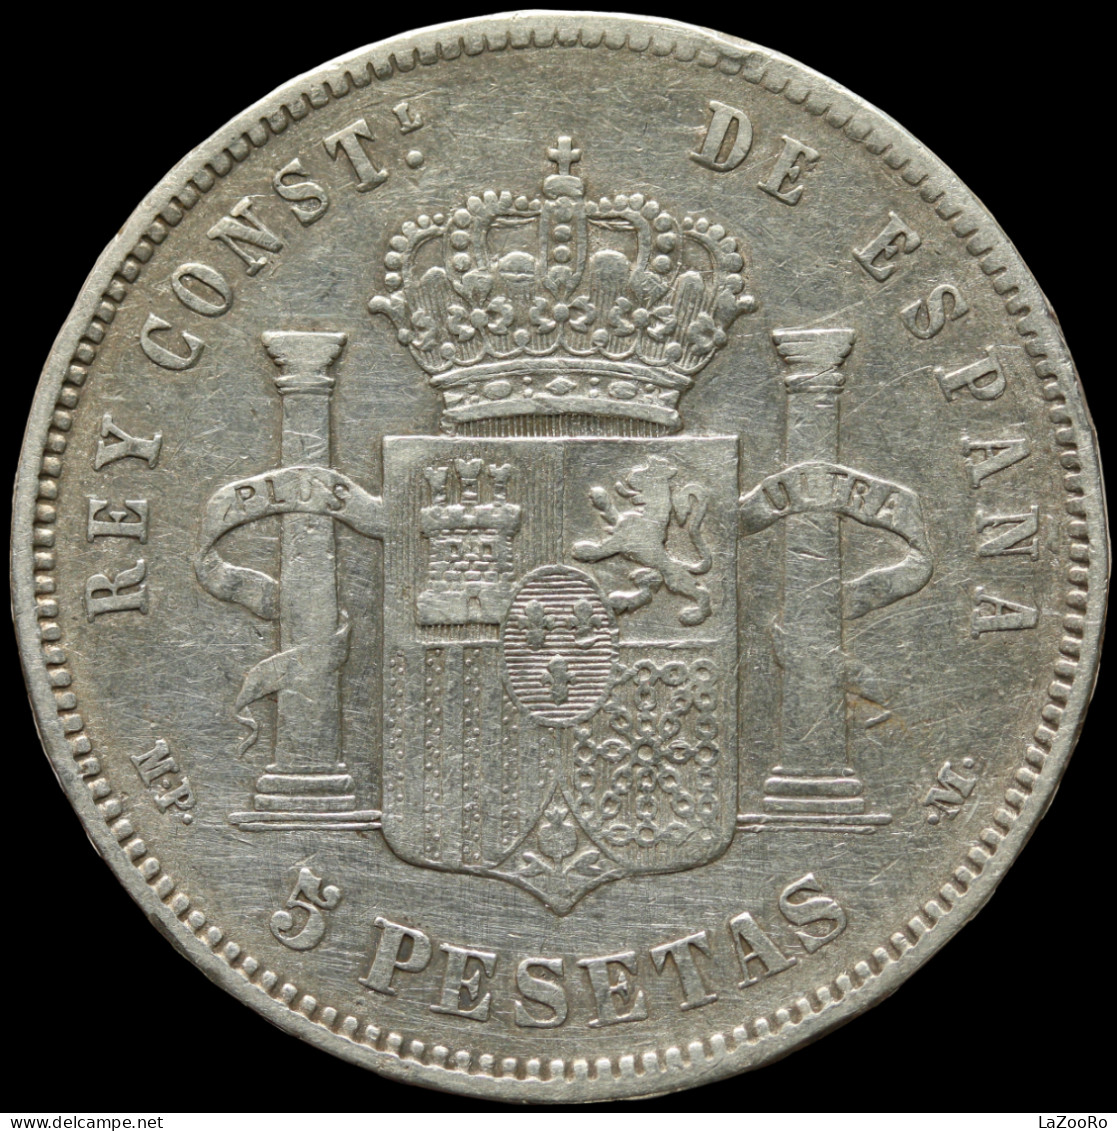 LaZooRo: Spain 5 Pesetas 1888 VF / XF - Silver - Eerste Muntslagen